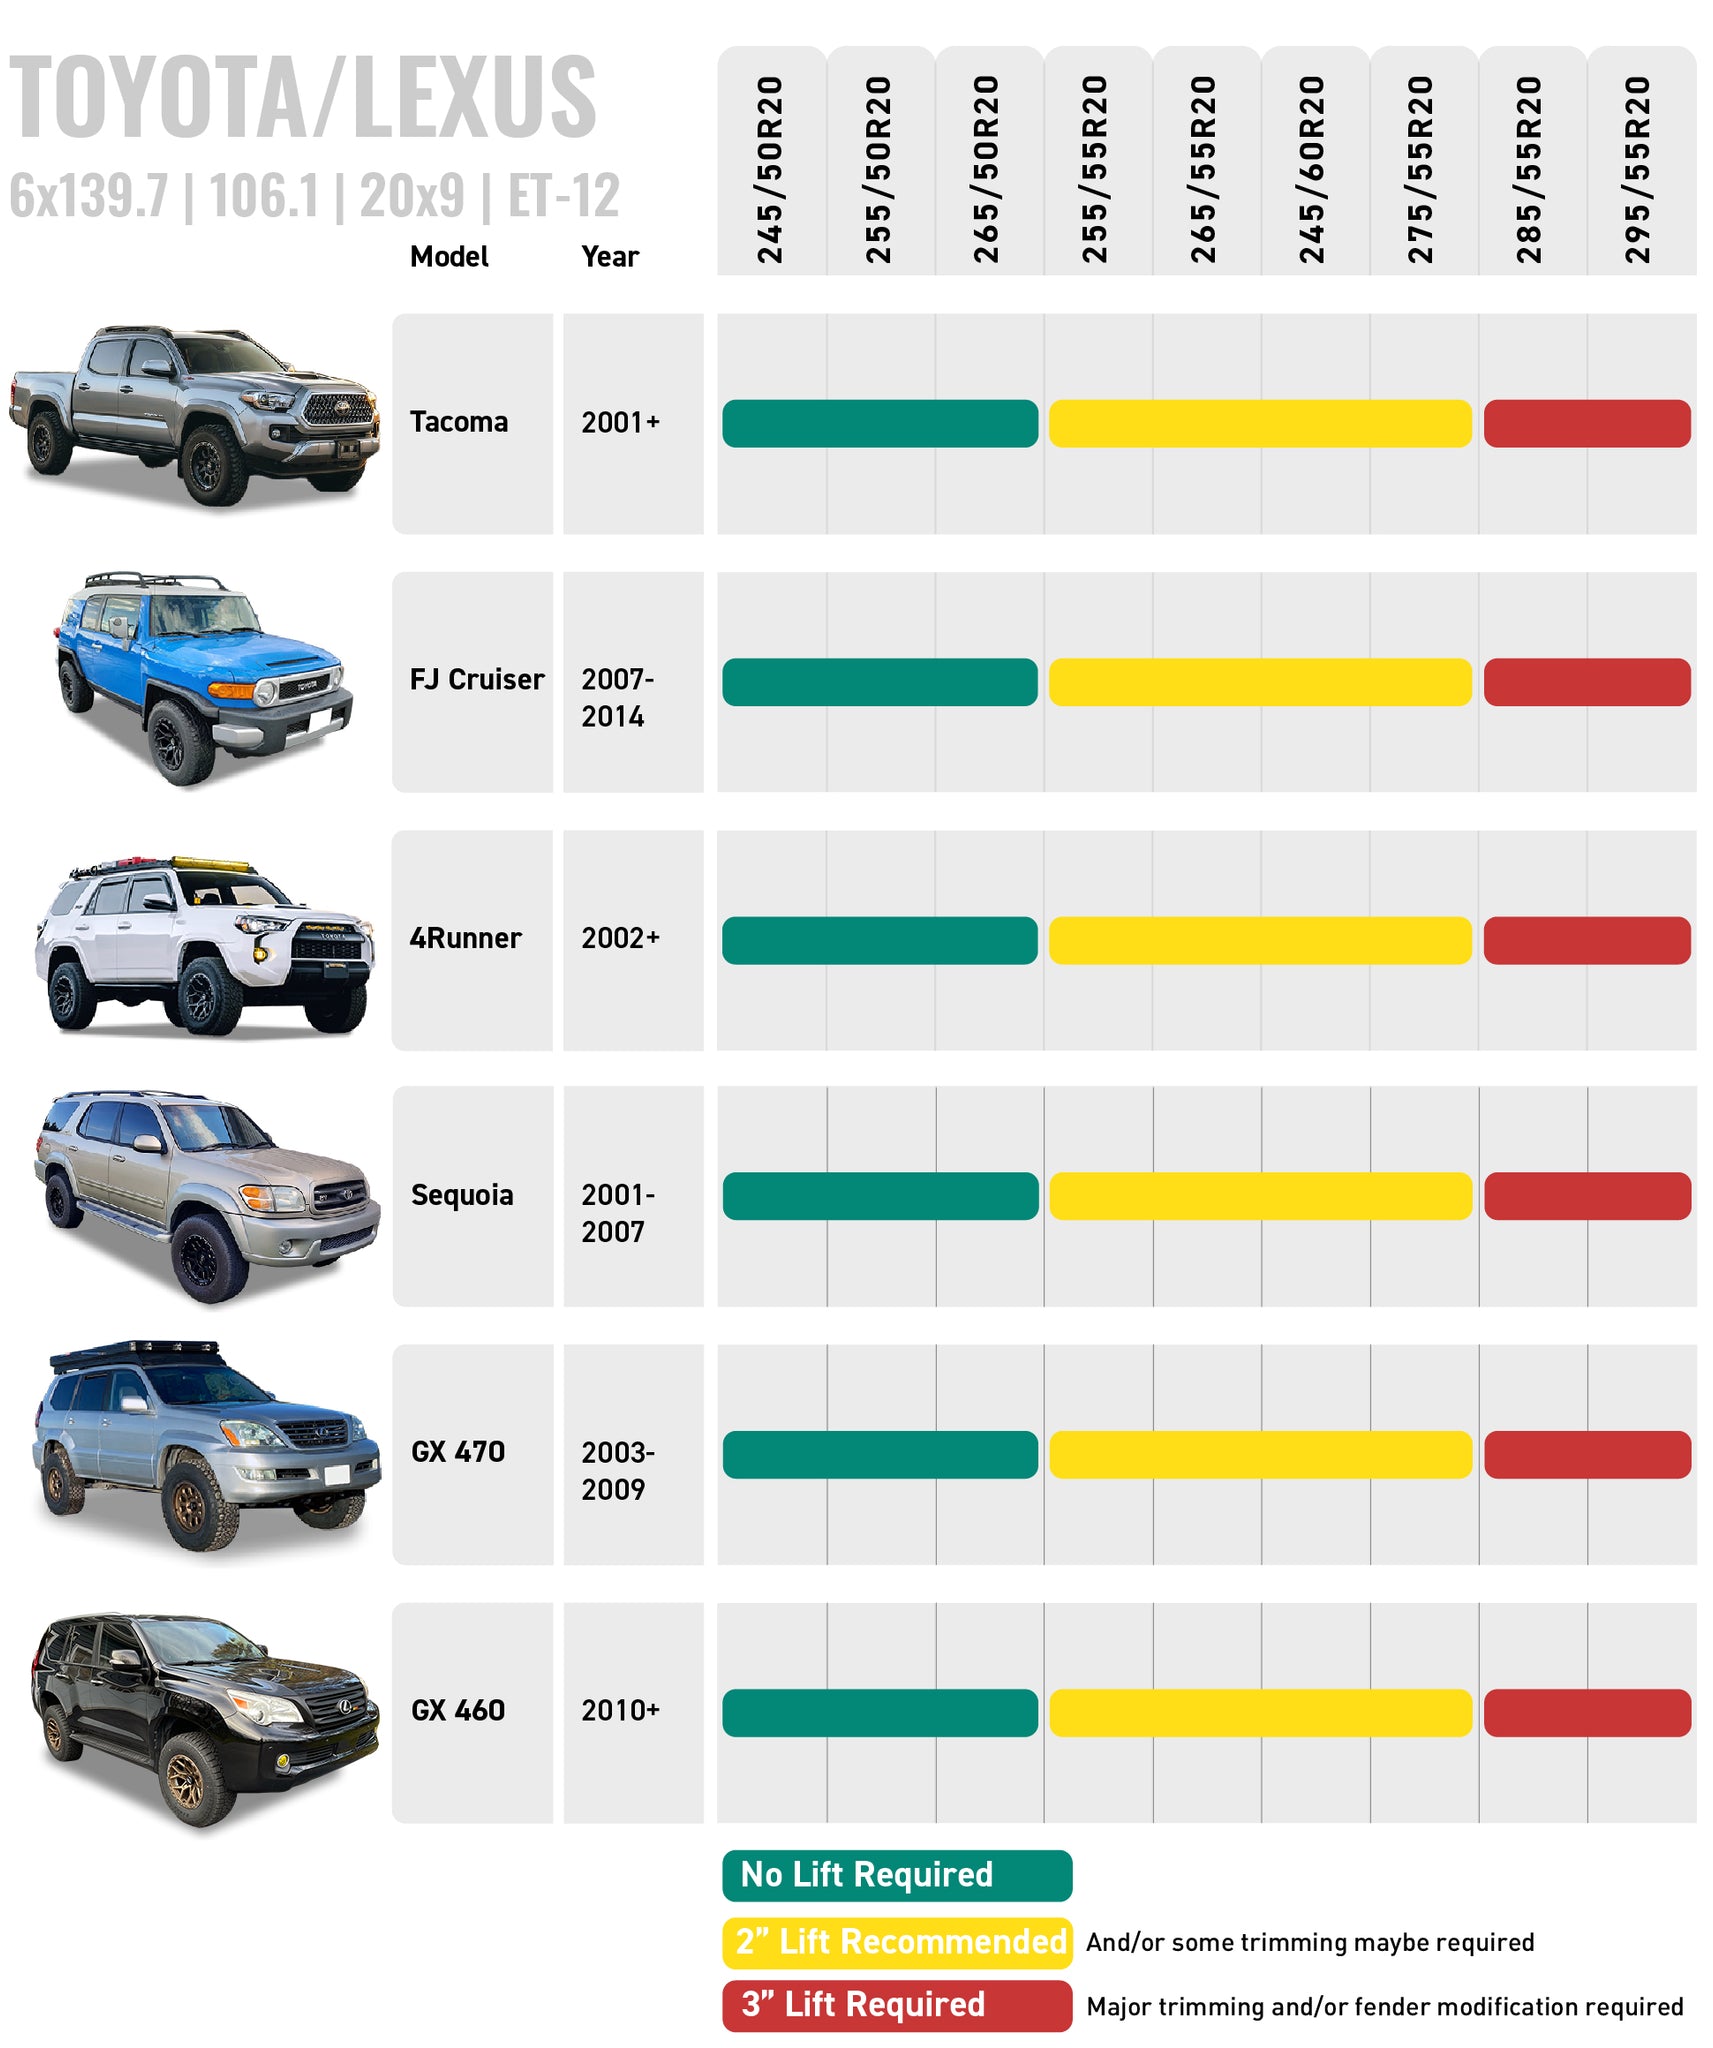 Tire Size Guide - 6x139.7 | 106.1 | 20x9 | ET-12 Toyota/Lexus